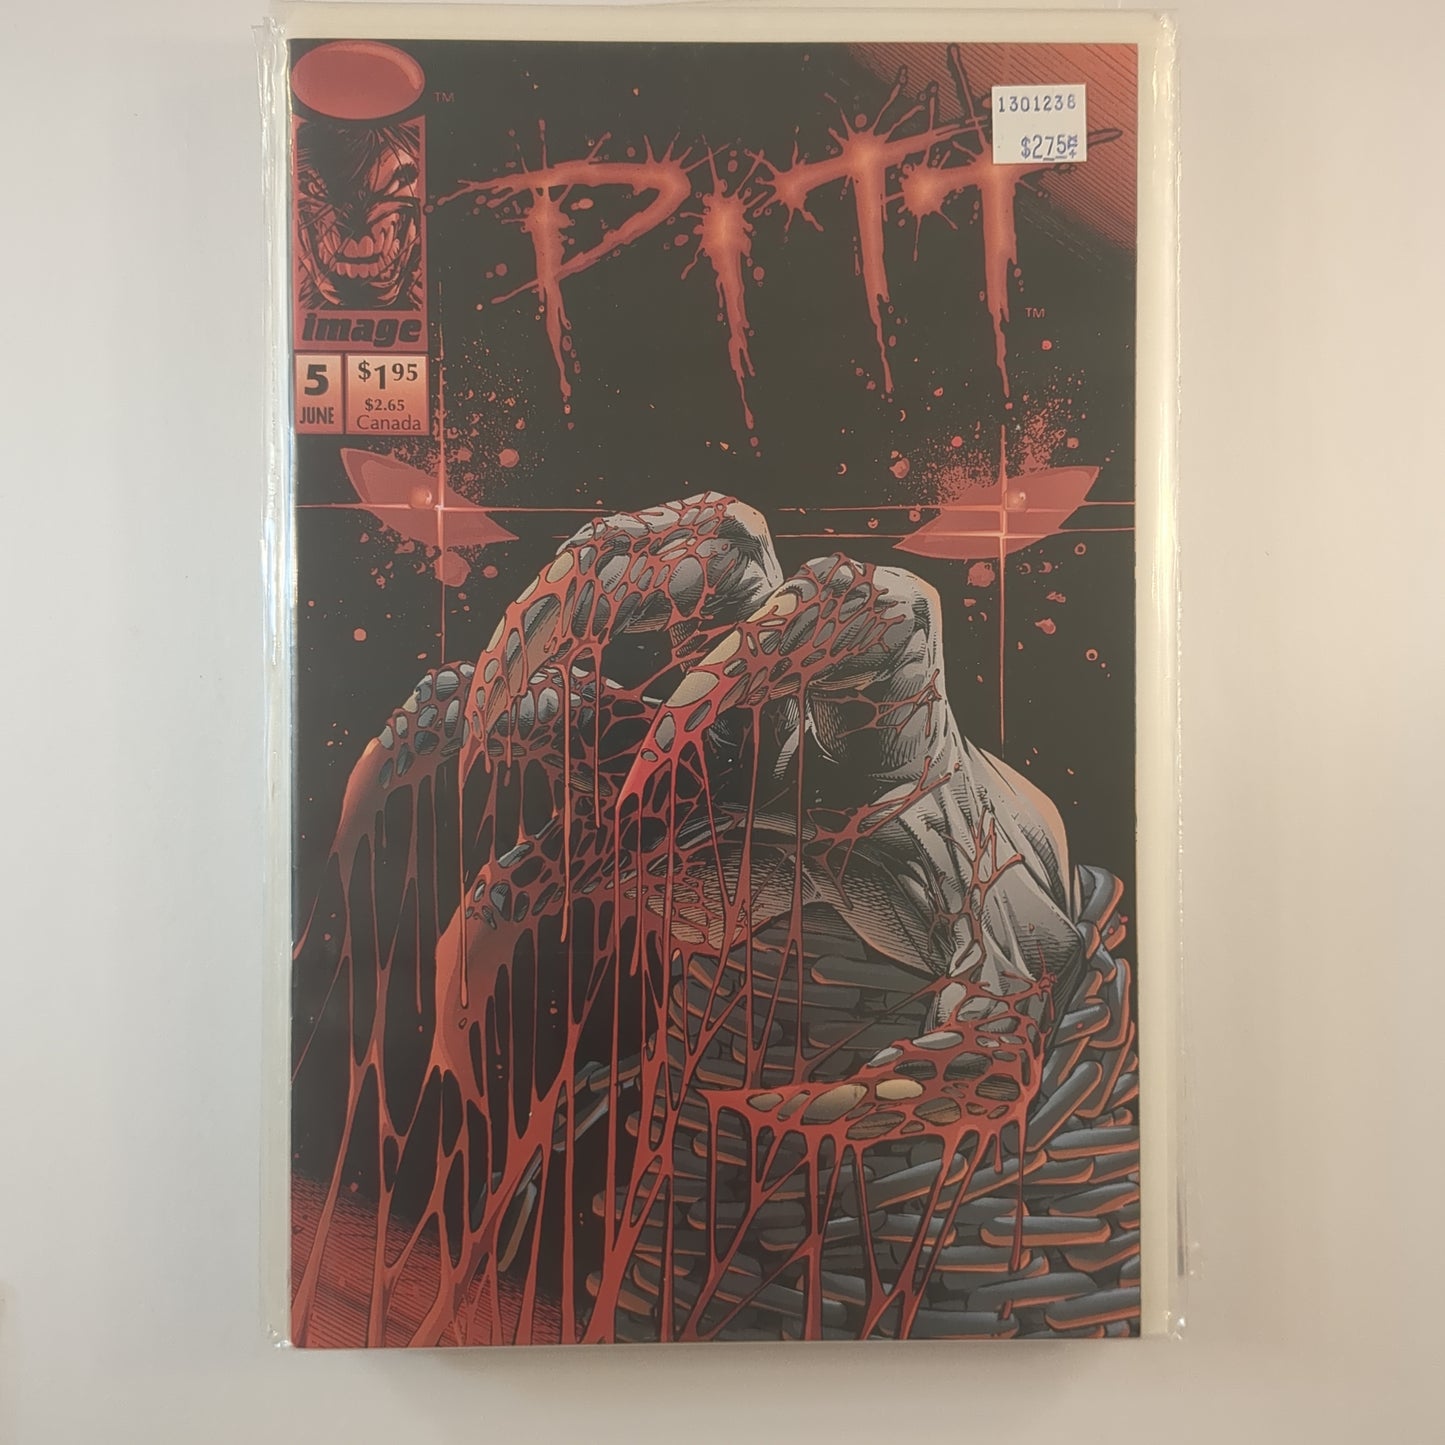 Pitt (1993)